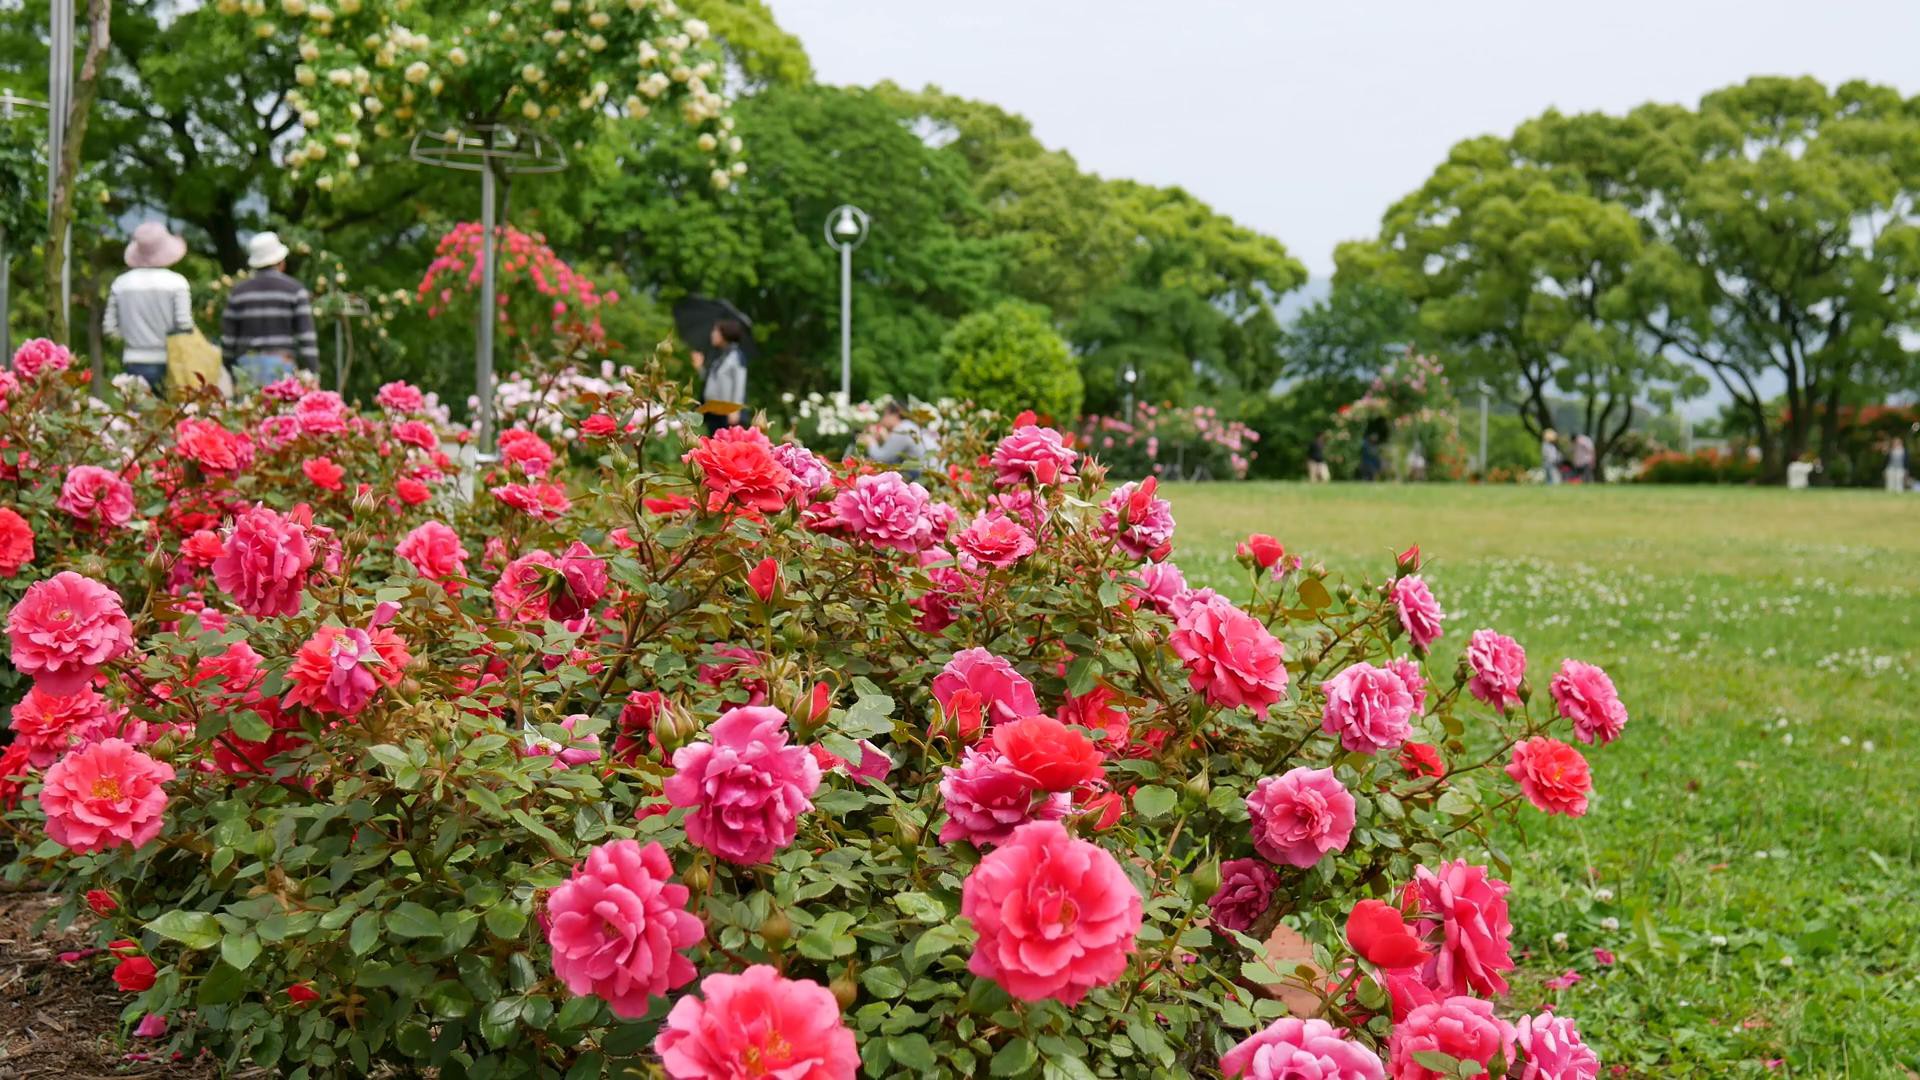 Đến thăm khu vườn trên đảo ở Nhật Bản với 2.600 cây hoa hồng rung rinh trước gió đẹp mê mẩn lòng người - Ảnh 8.